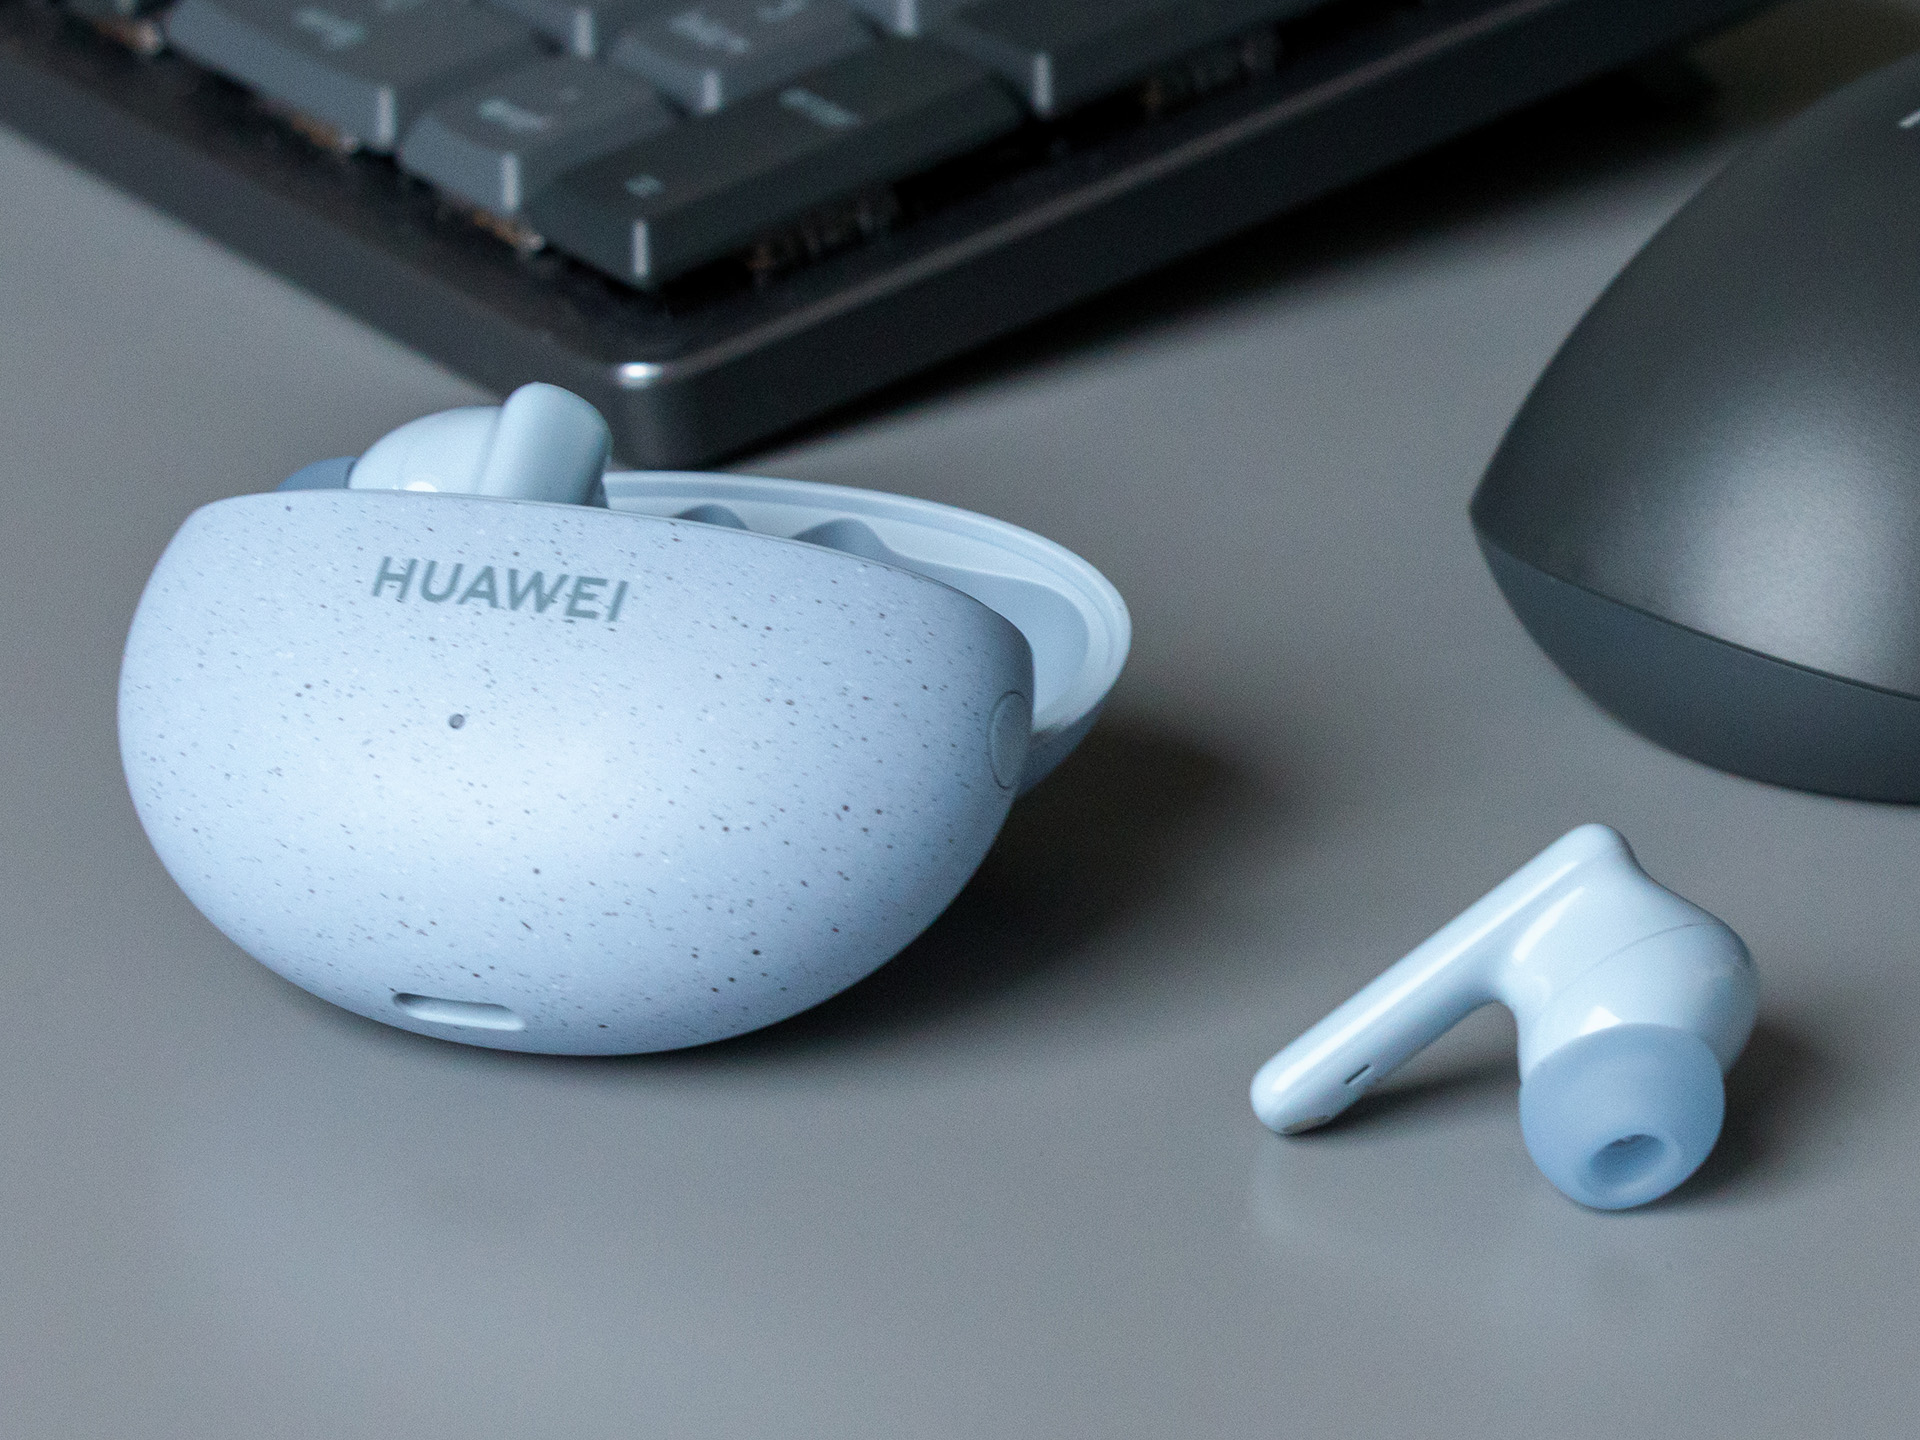 Huawei Preiswerte LDAC In-Ear-Kopfhörer 5i - Notebookcheck.com FreeBuds - Test mit Tests